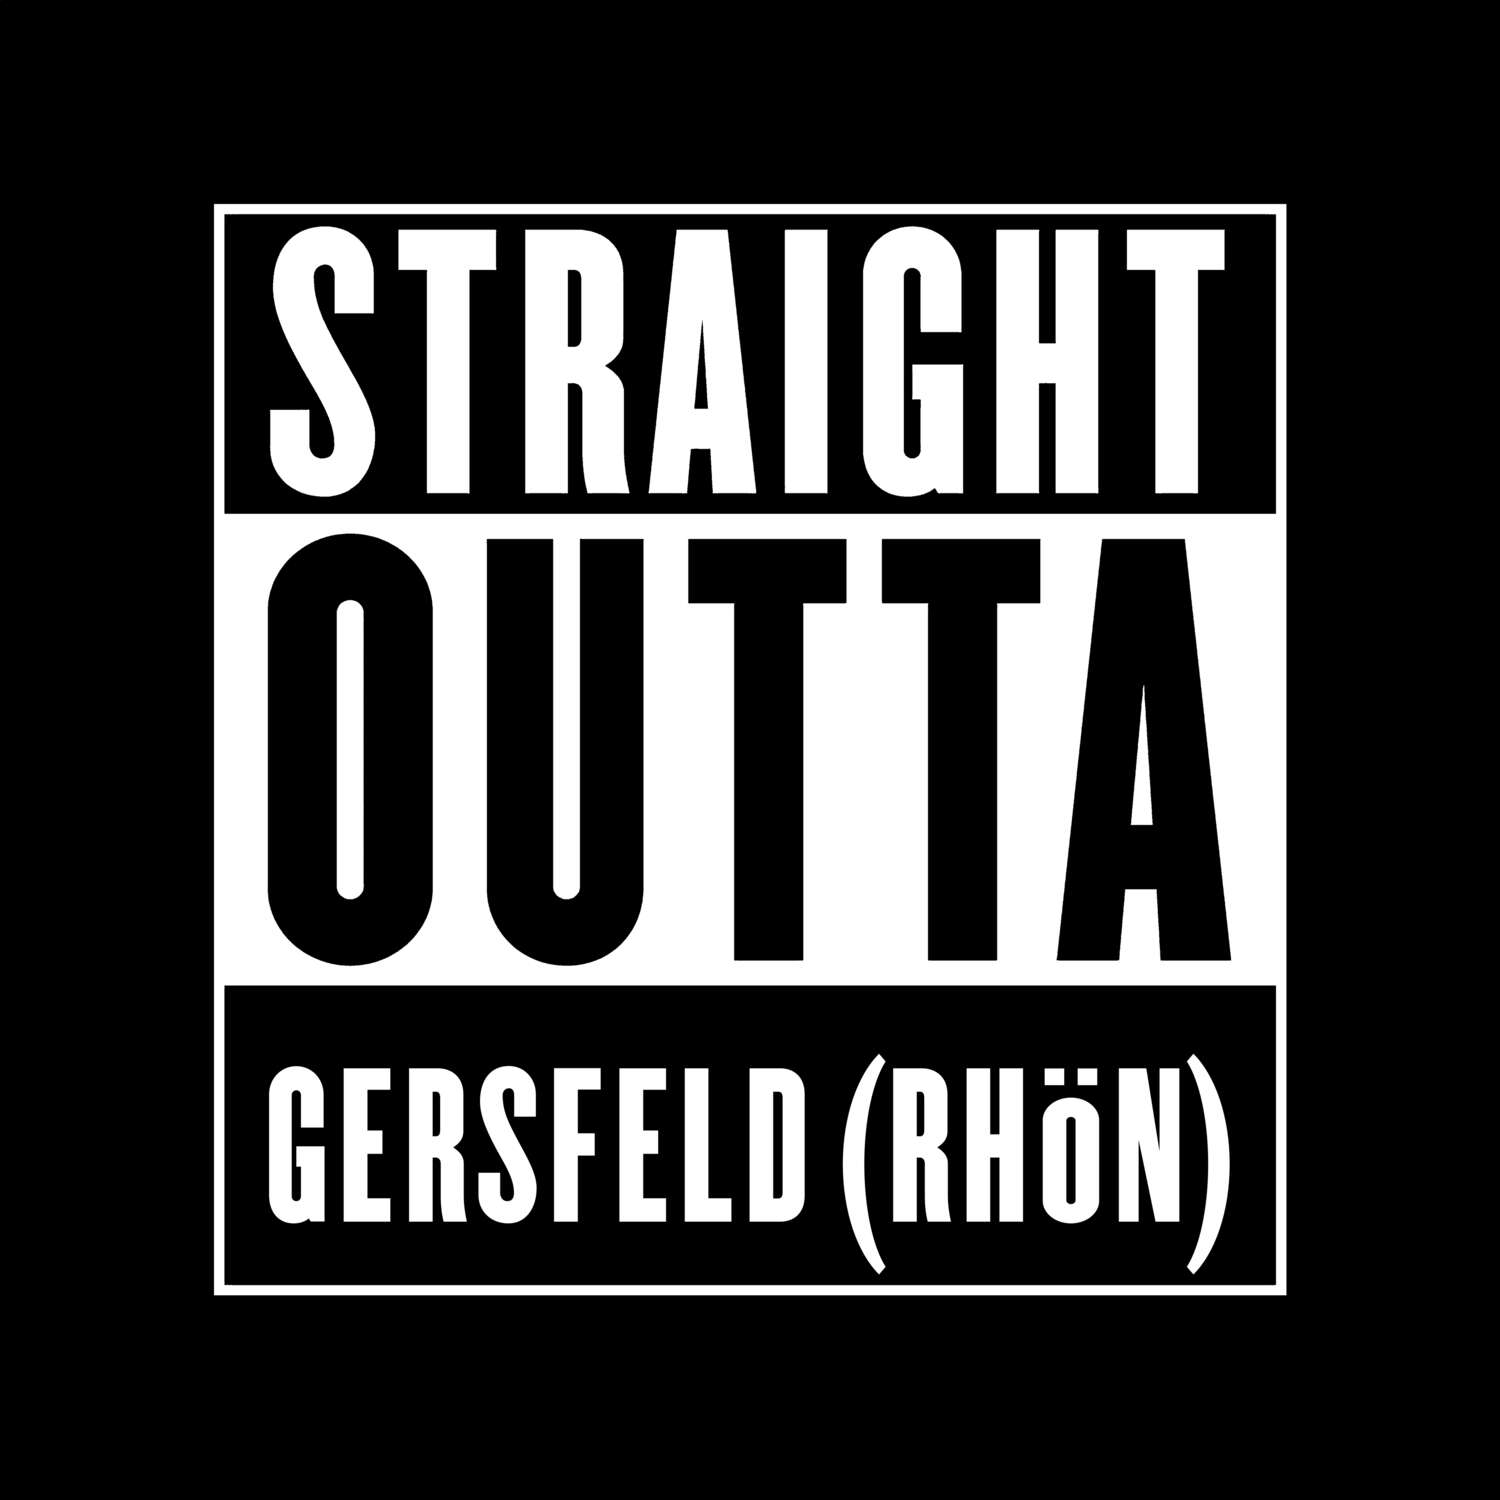 Gersfeld (Rhön) T-Shirt »Straight Outta«